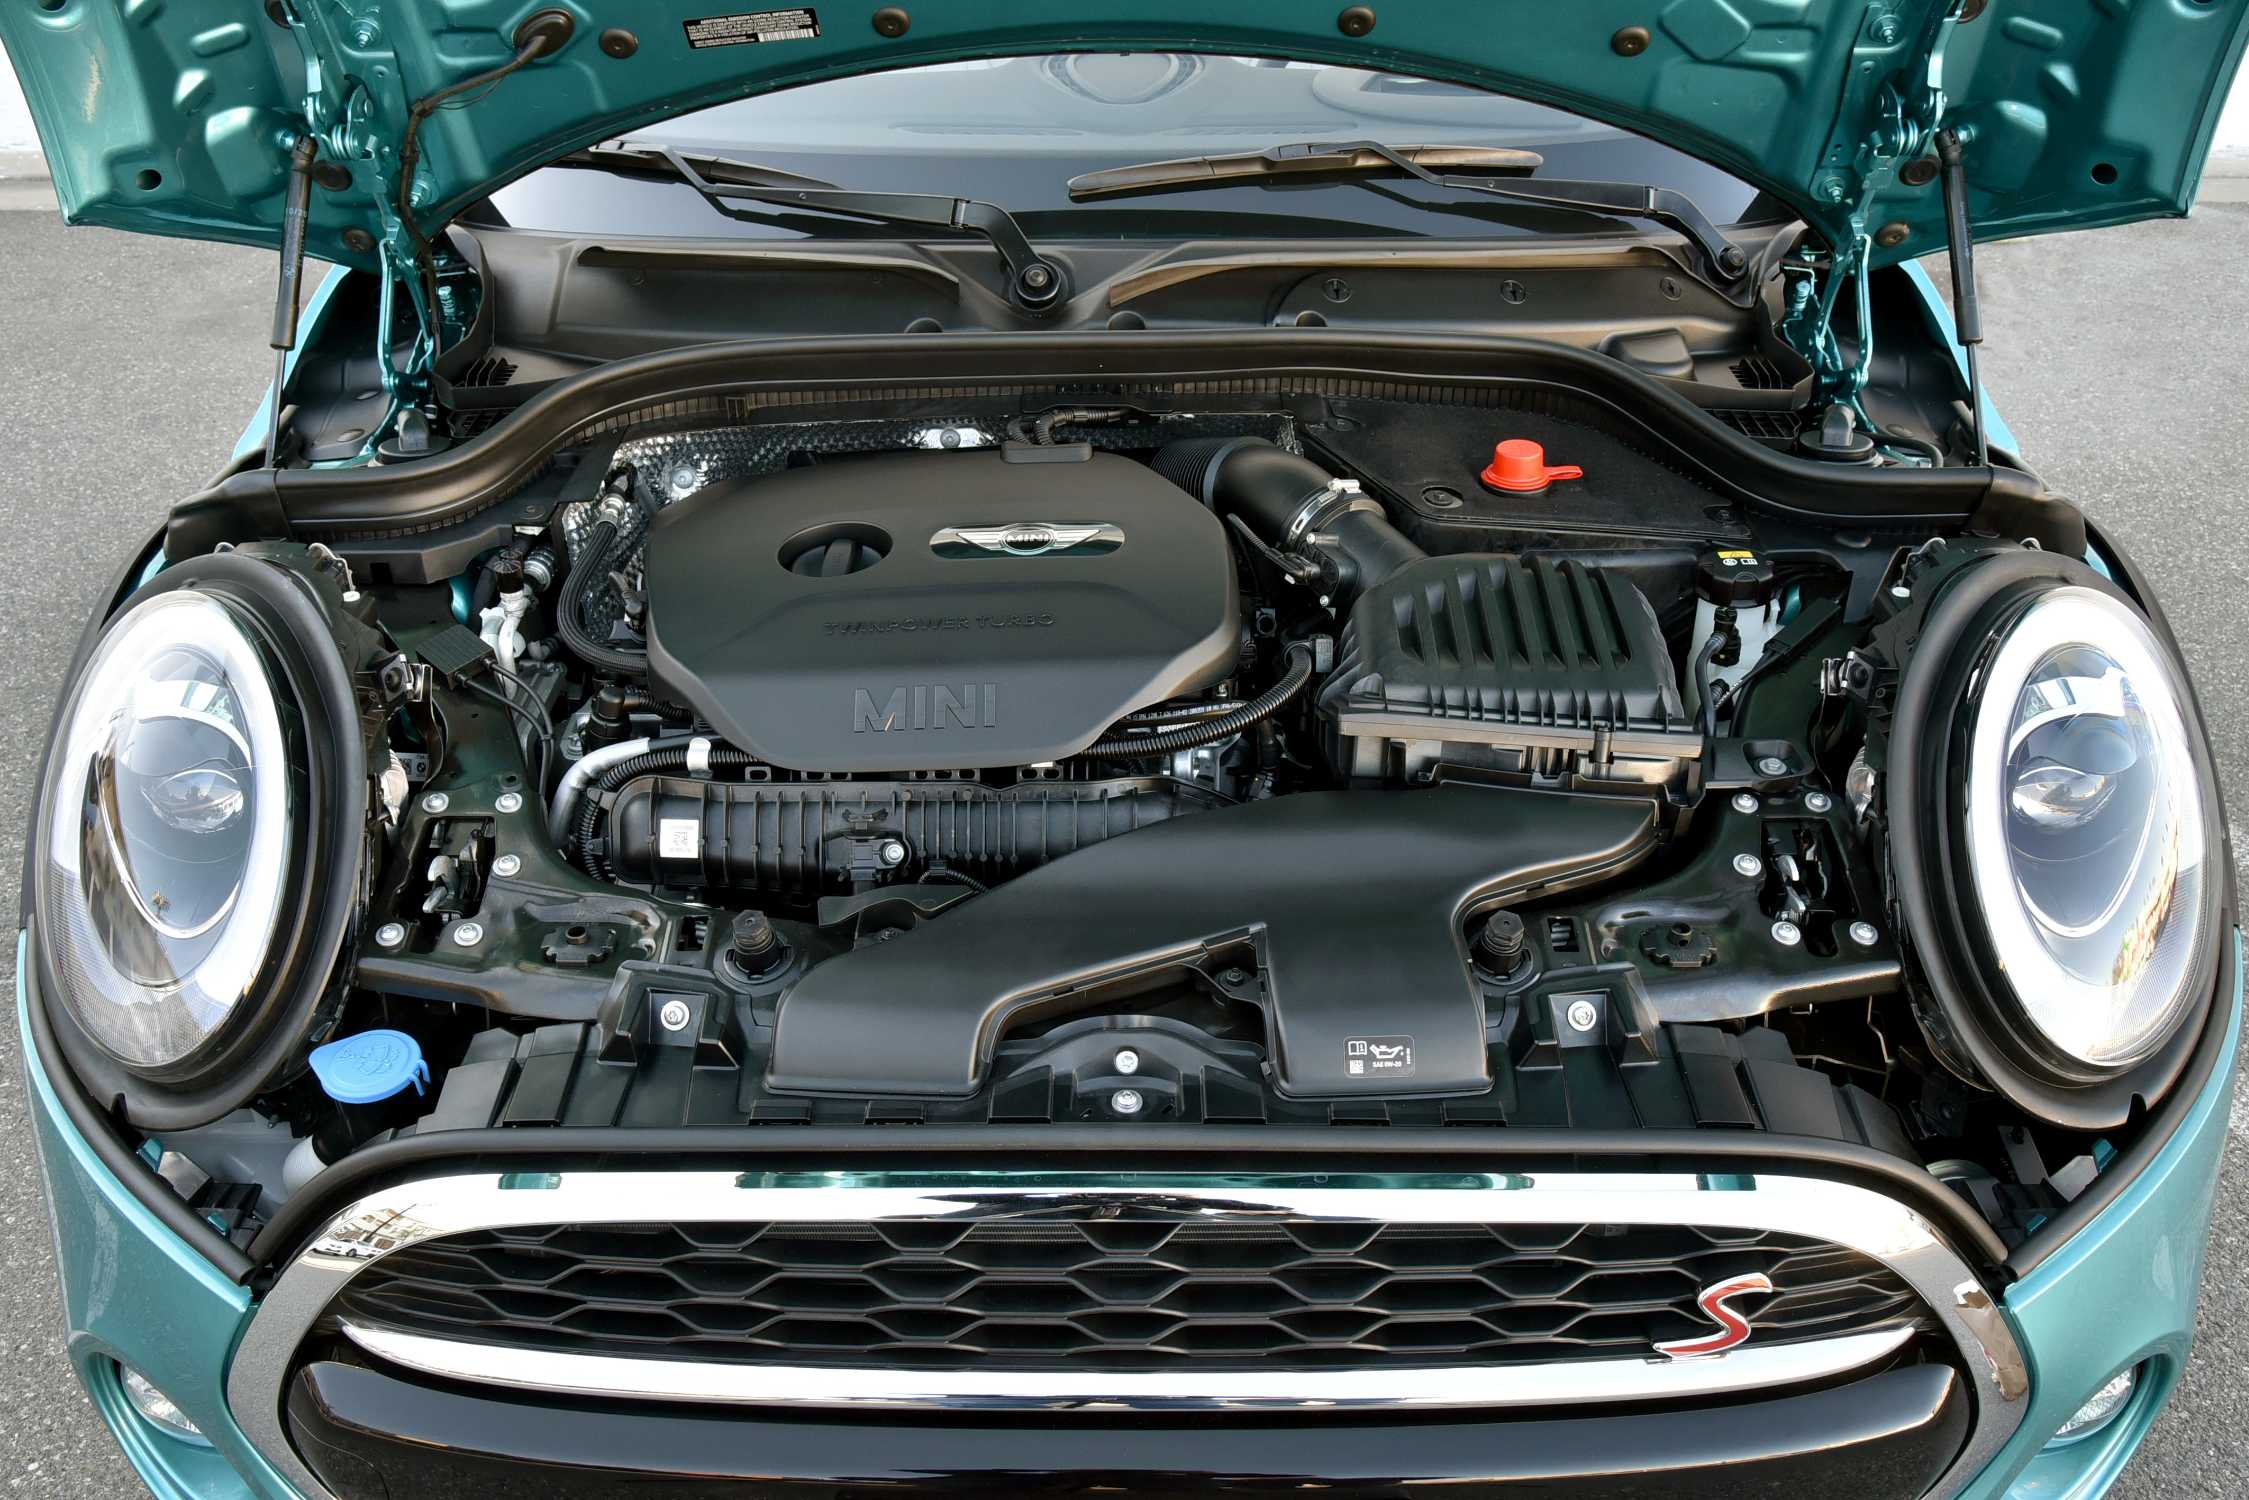 MINI Cooper S Convertible. 2.0 litre MINI TwinPower Turbo in-line ...